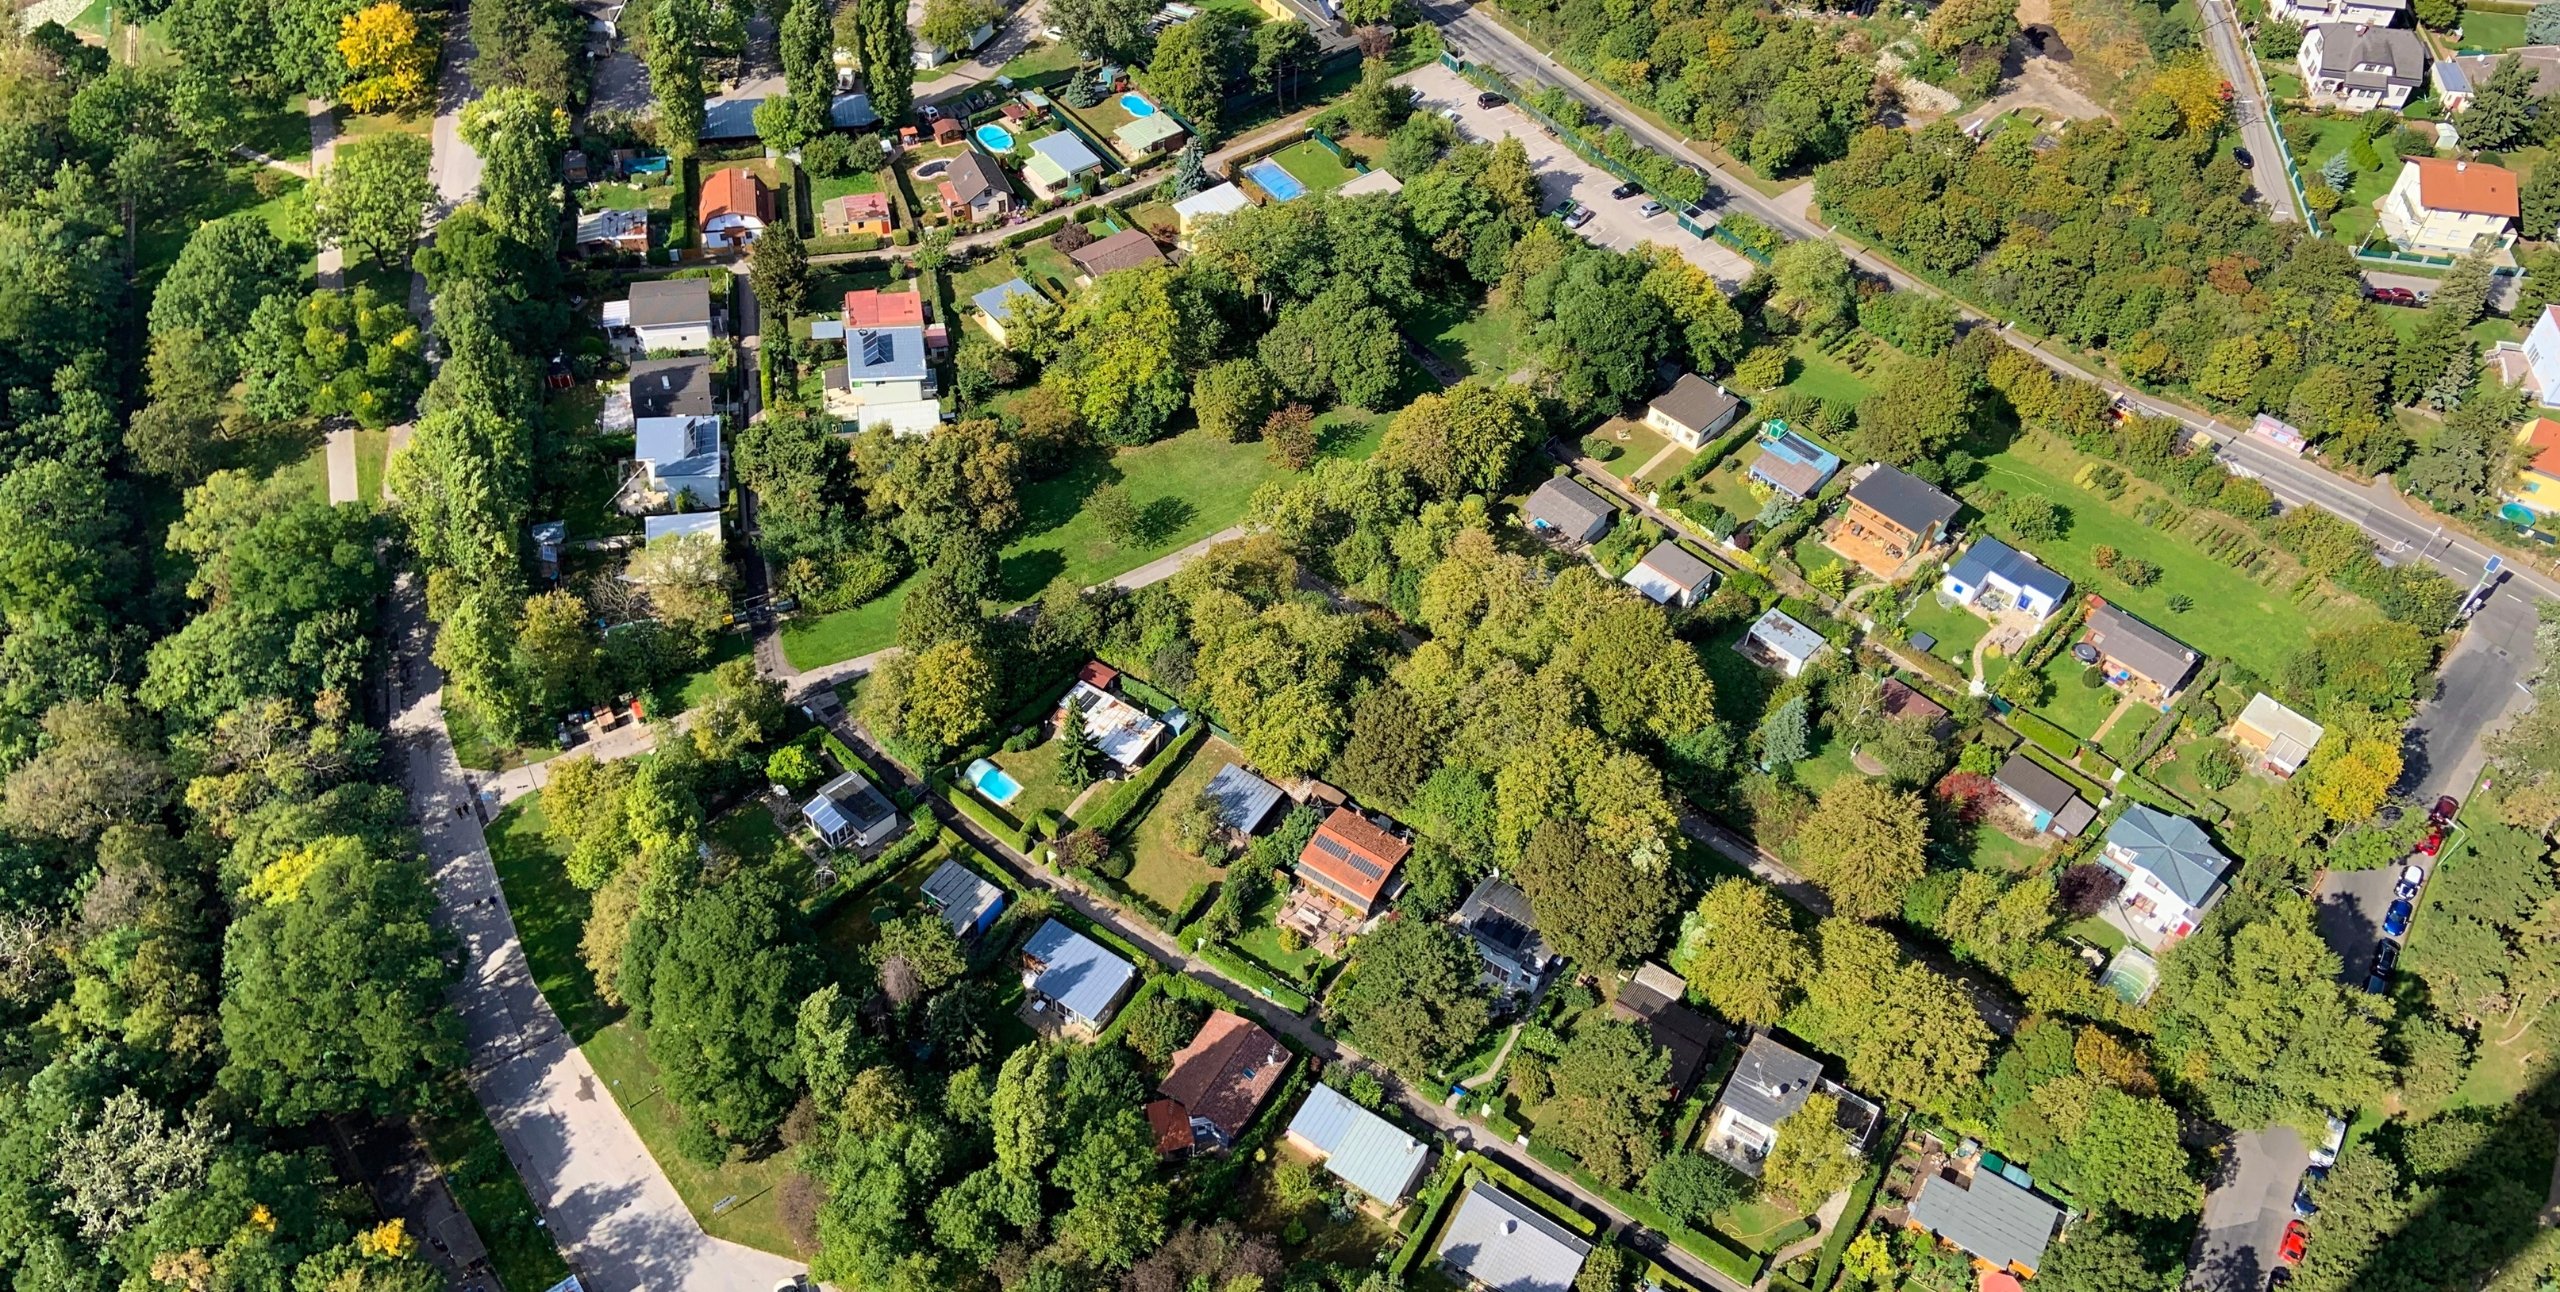 overhead view of suburban neighborhood